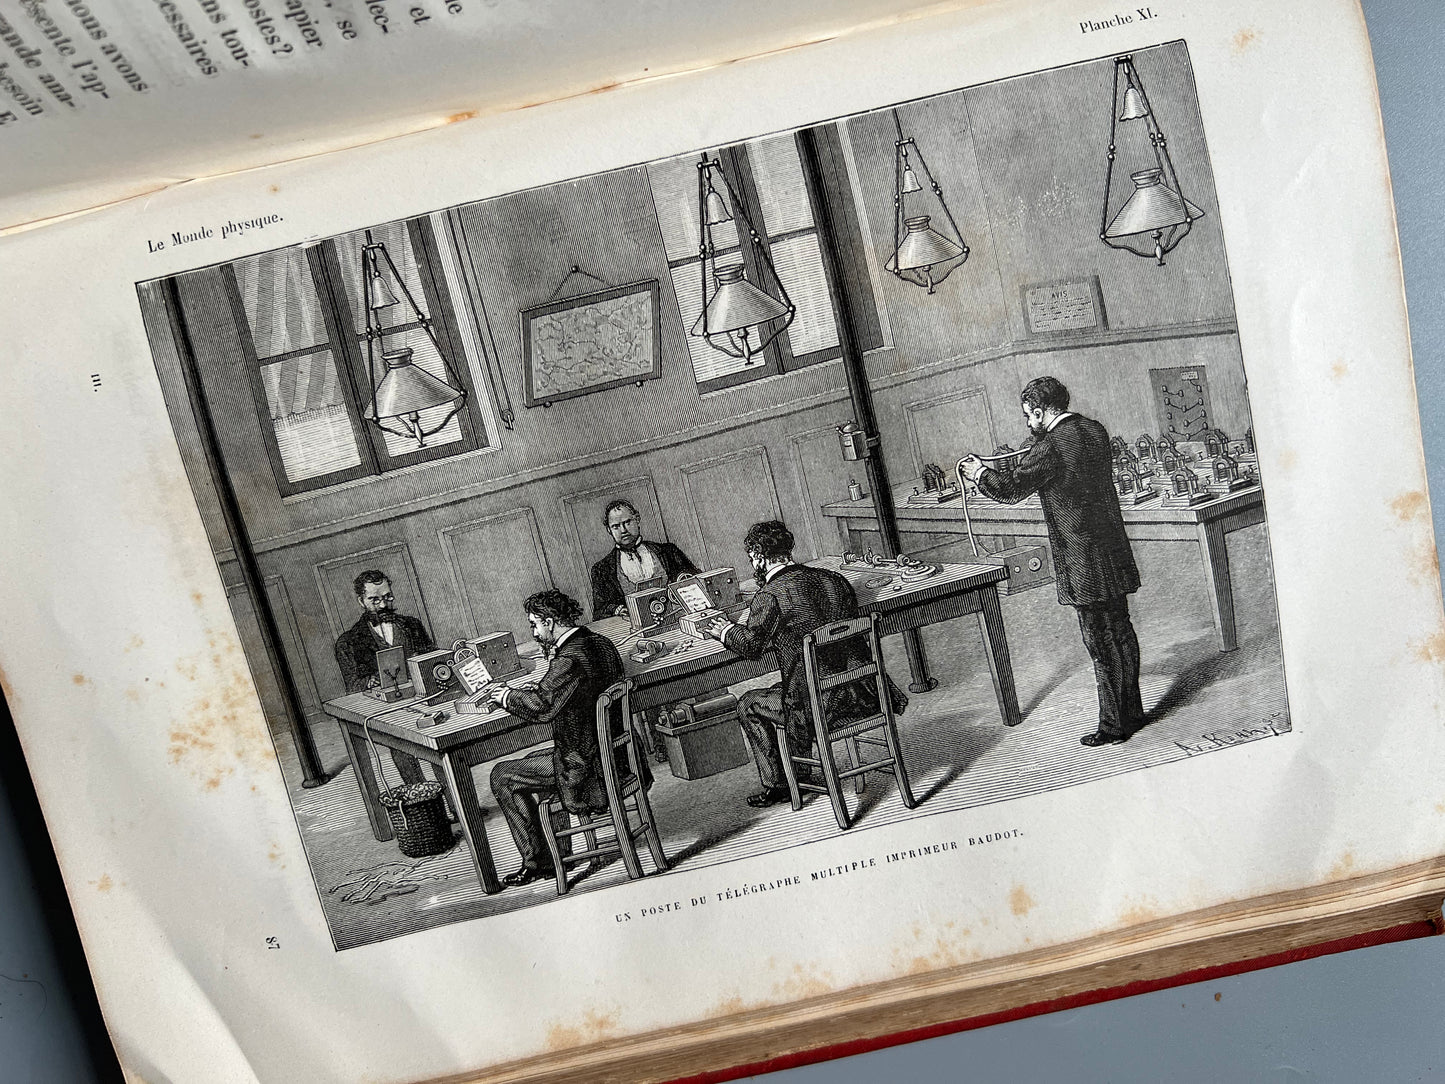 Le magnétisme et l'électricité, Amédée Guillemin - Libraire Hachette 1883